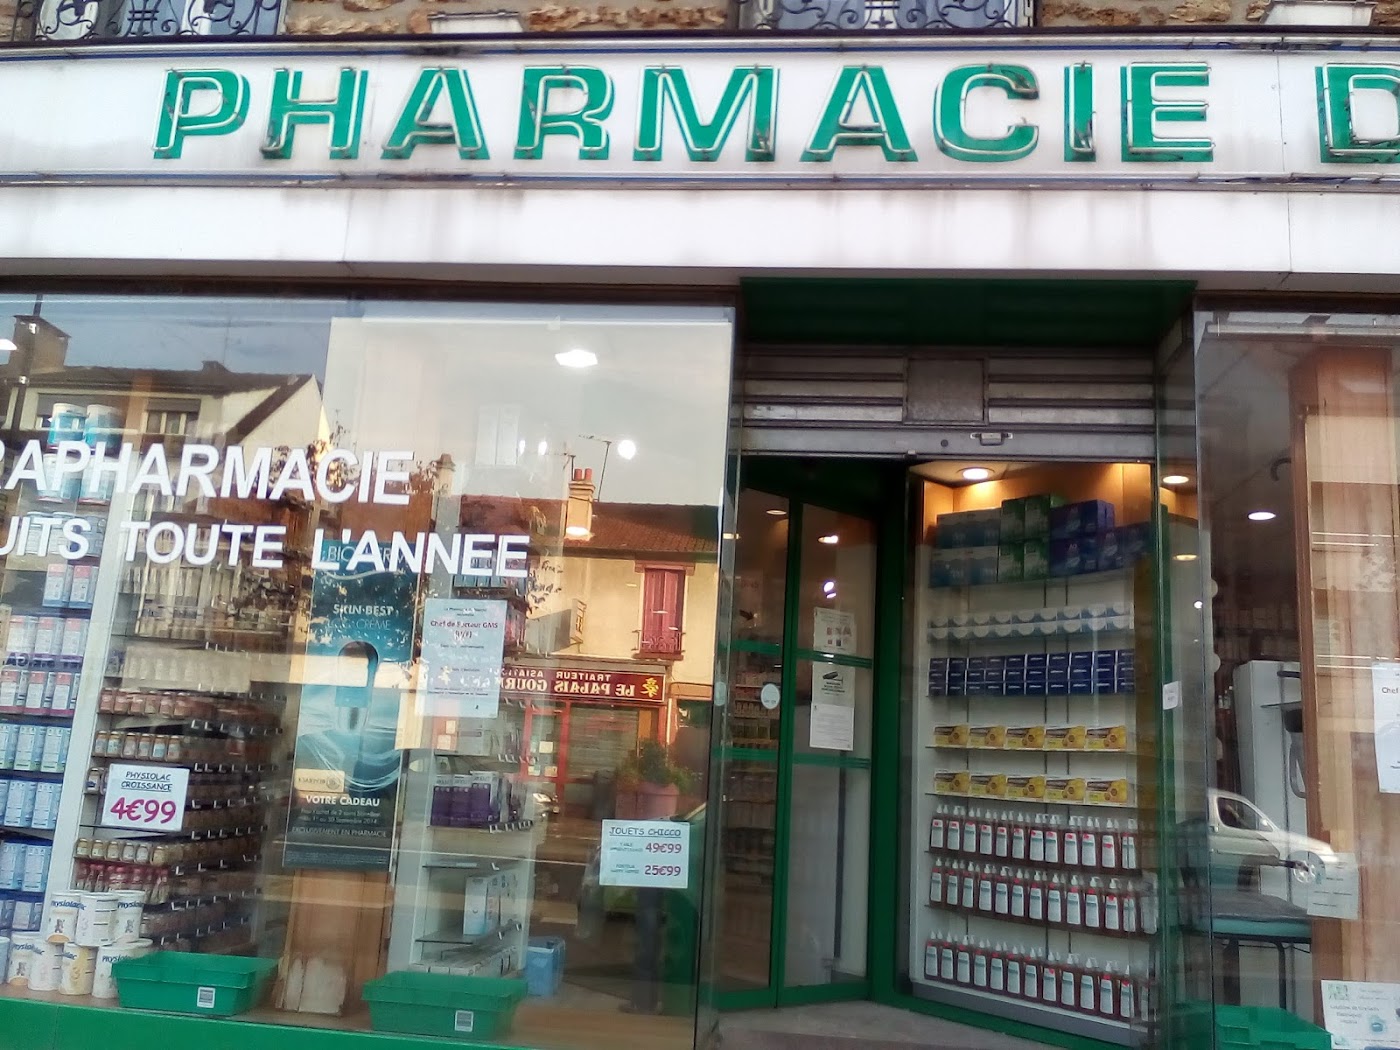 Pharmacie du Marché ELSIE Santé - Parapharmacie - Tests - Vaccinations